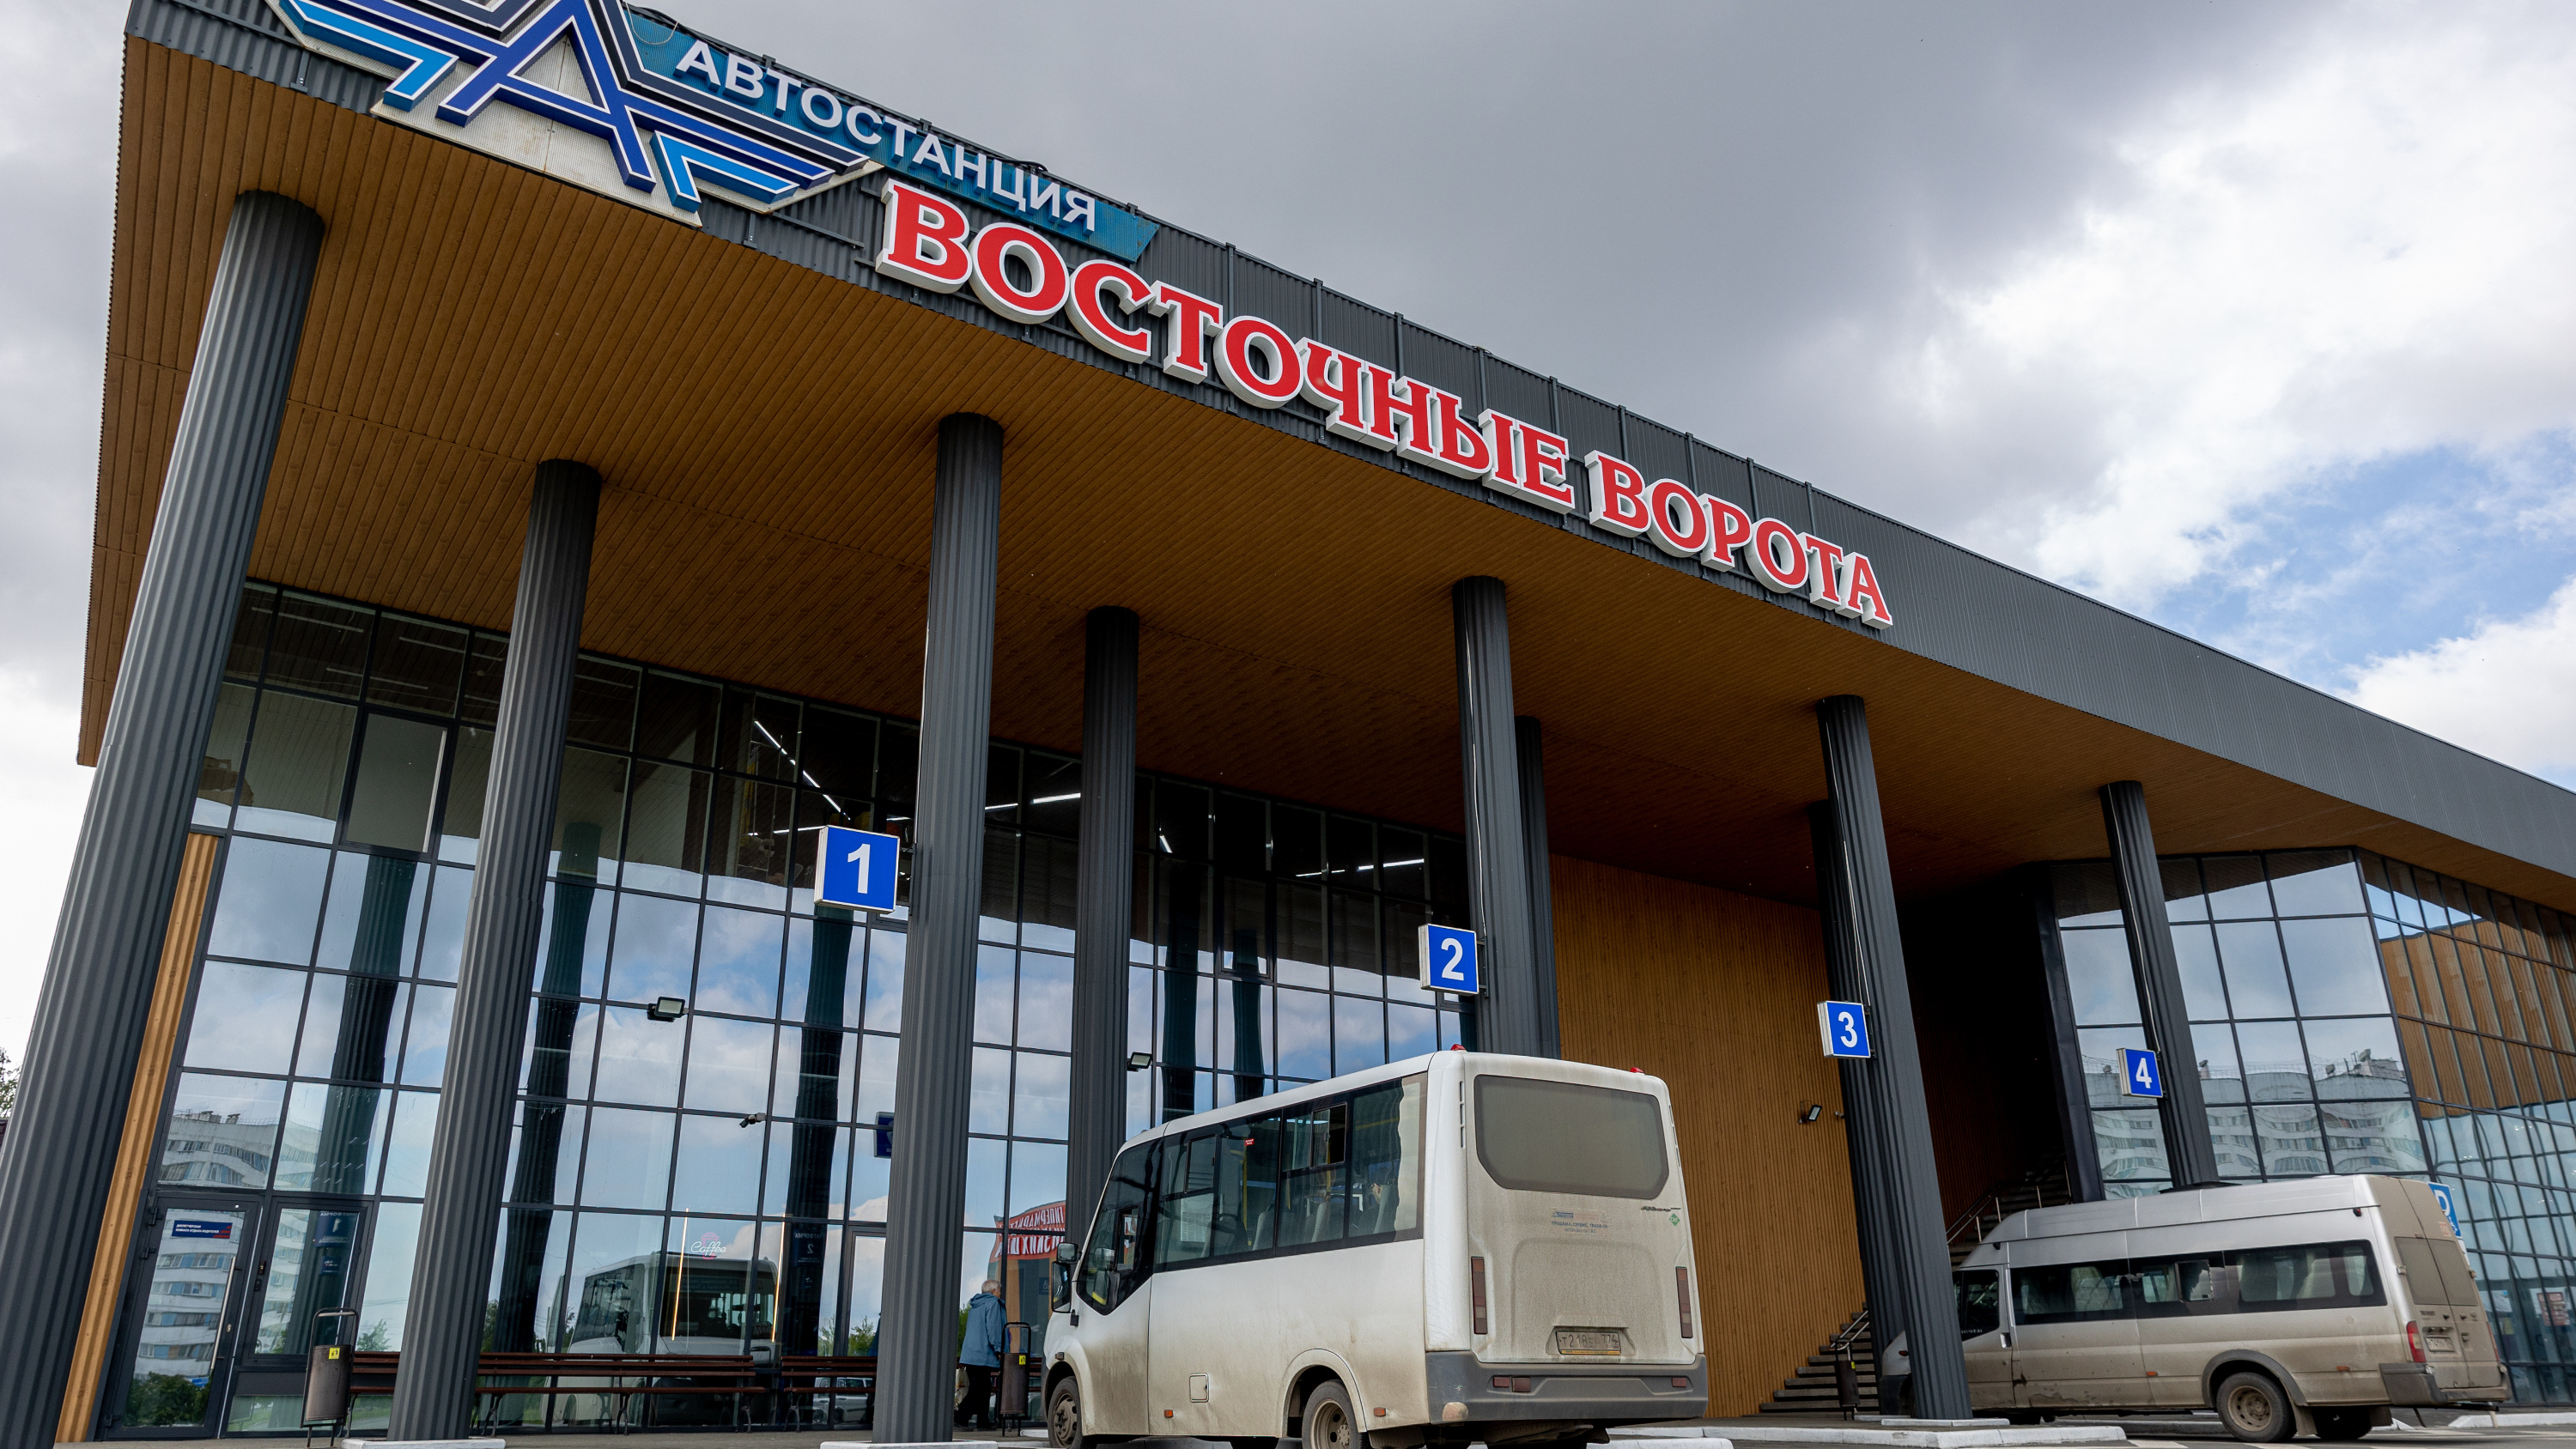 Пассажиров нет, есть покупатели. Тайно построенный автовокзал в Челябинске, похоже, превратился в ТК